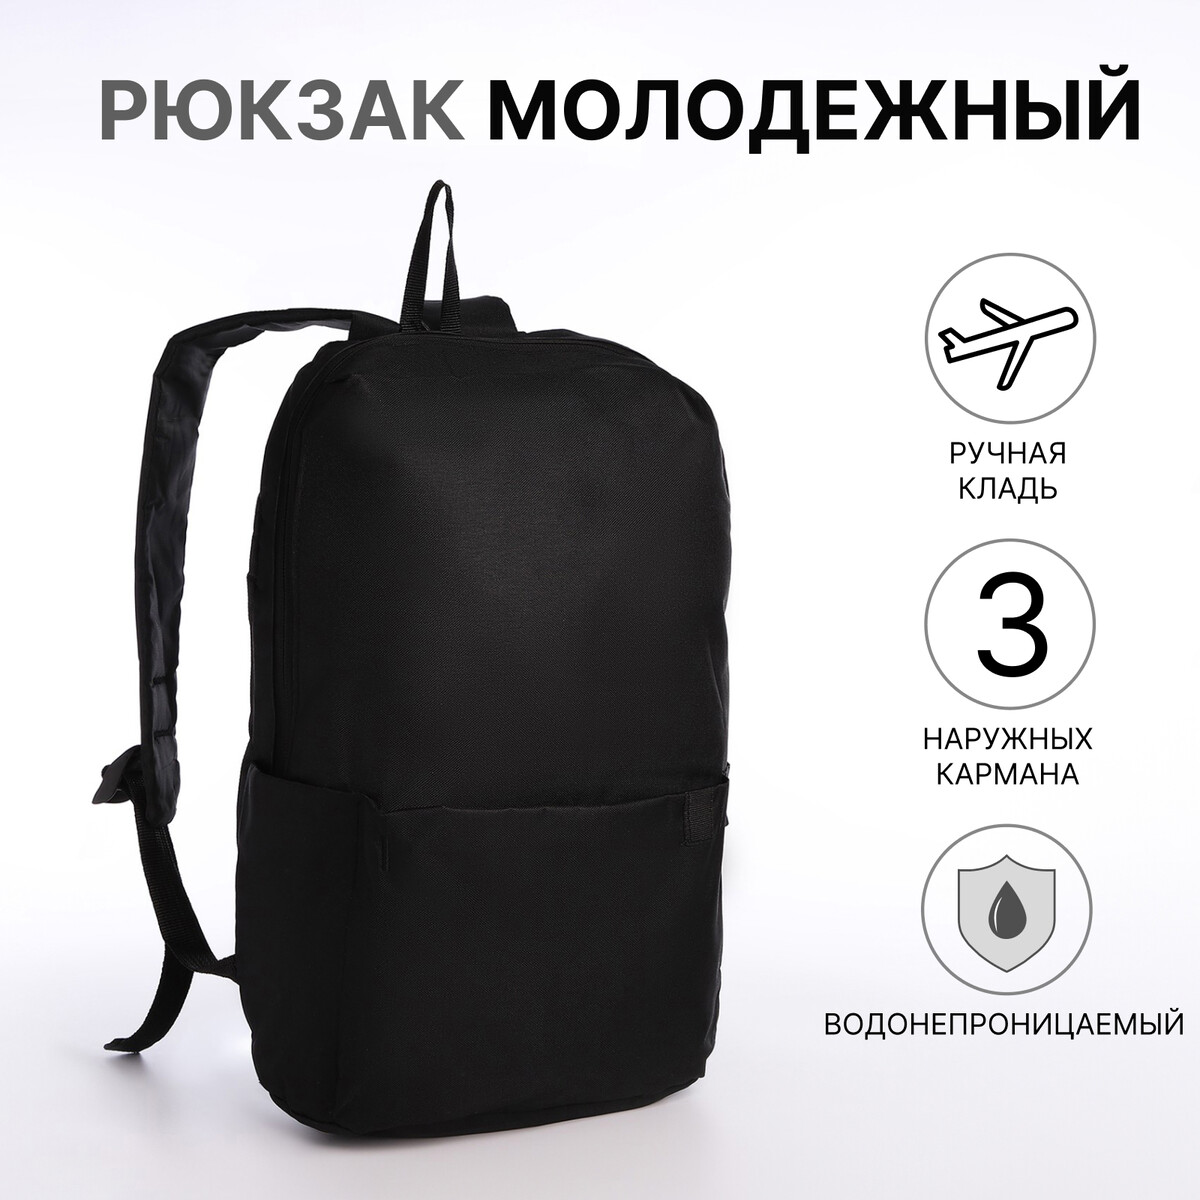 Рюкзак молодежный на молнии, водонепроницаемый, 3 наружных кармана, цвет черный